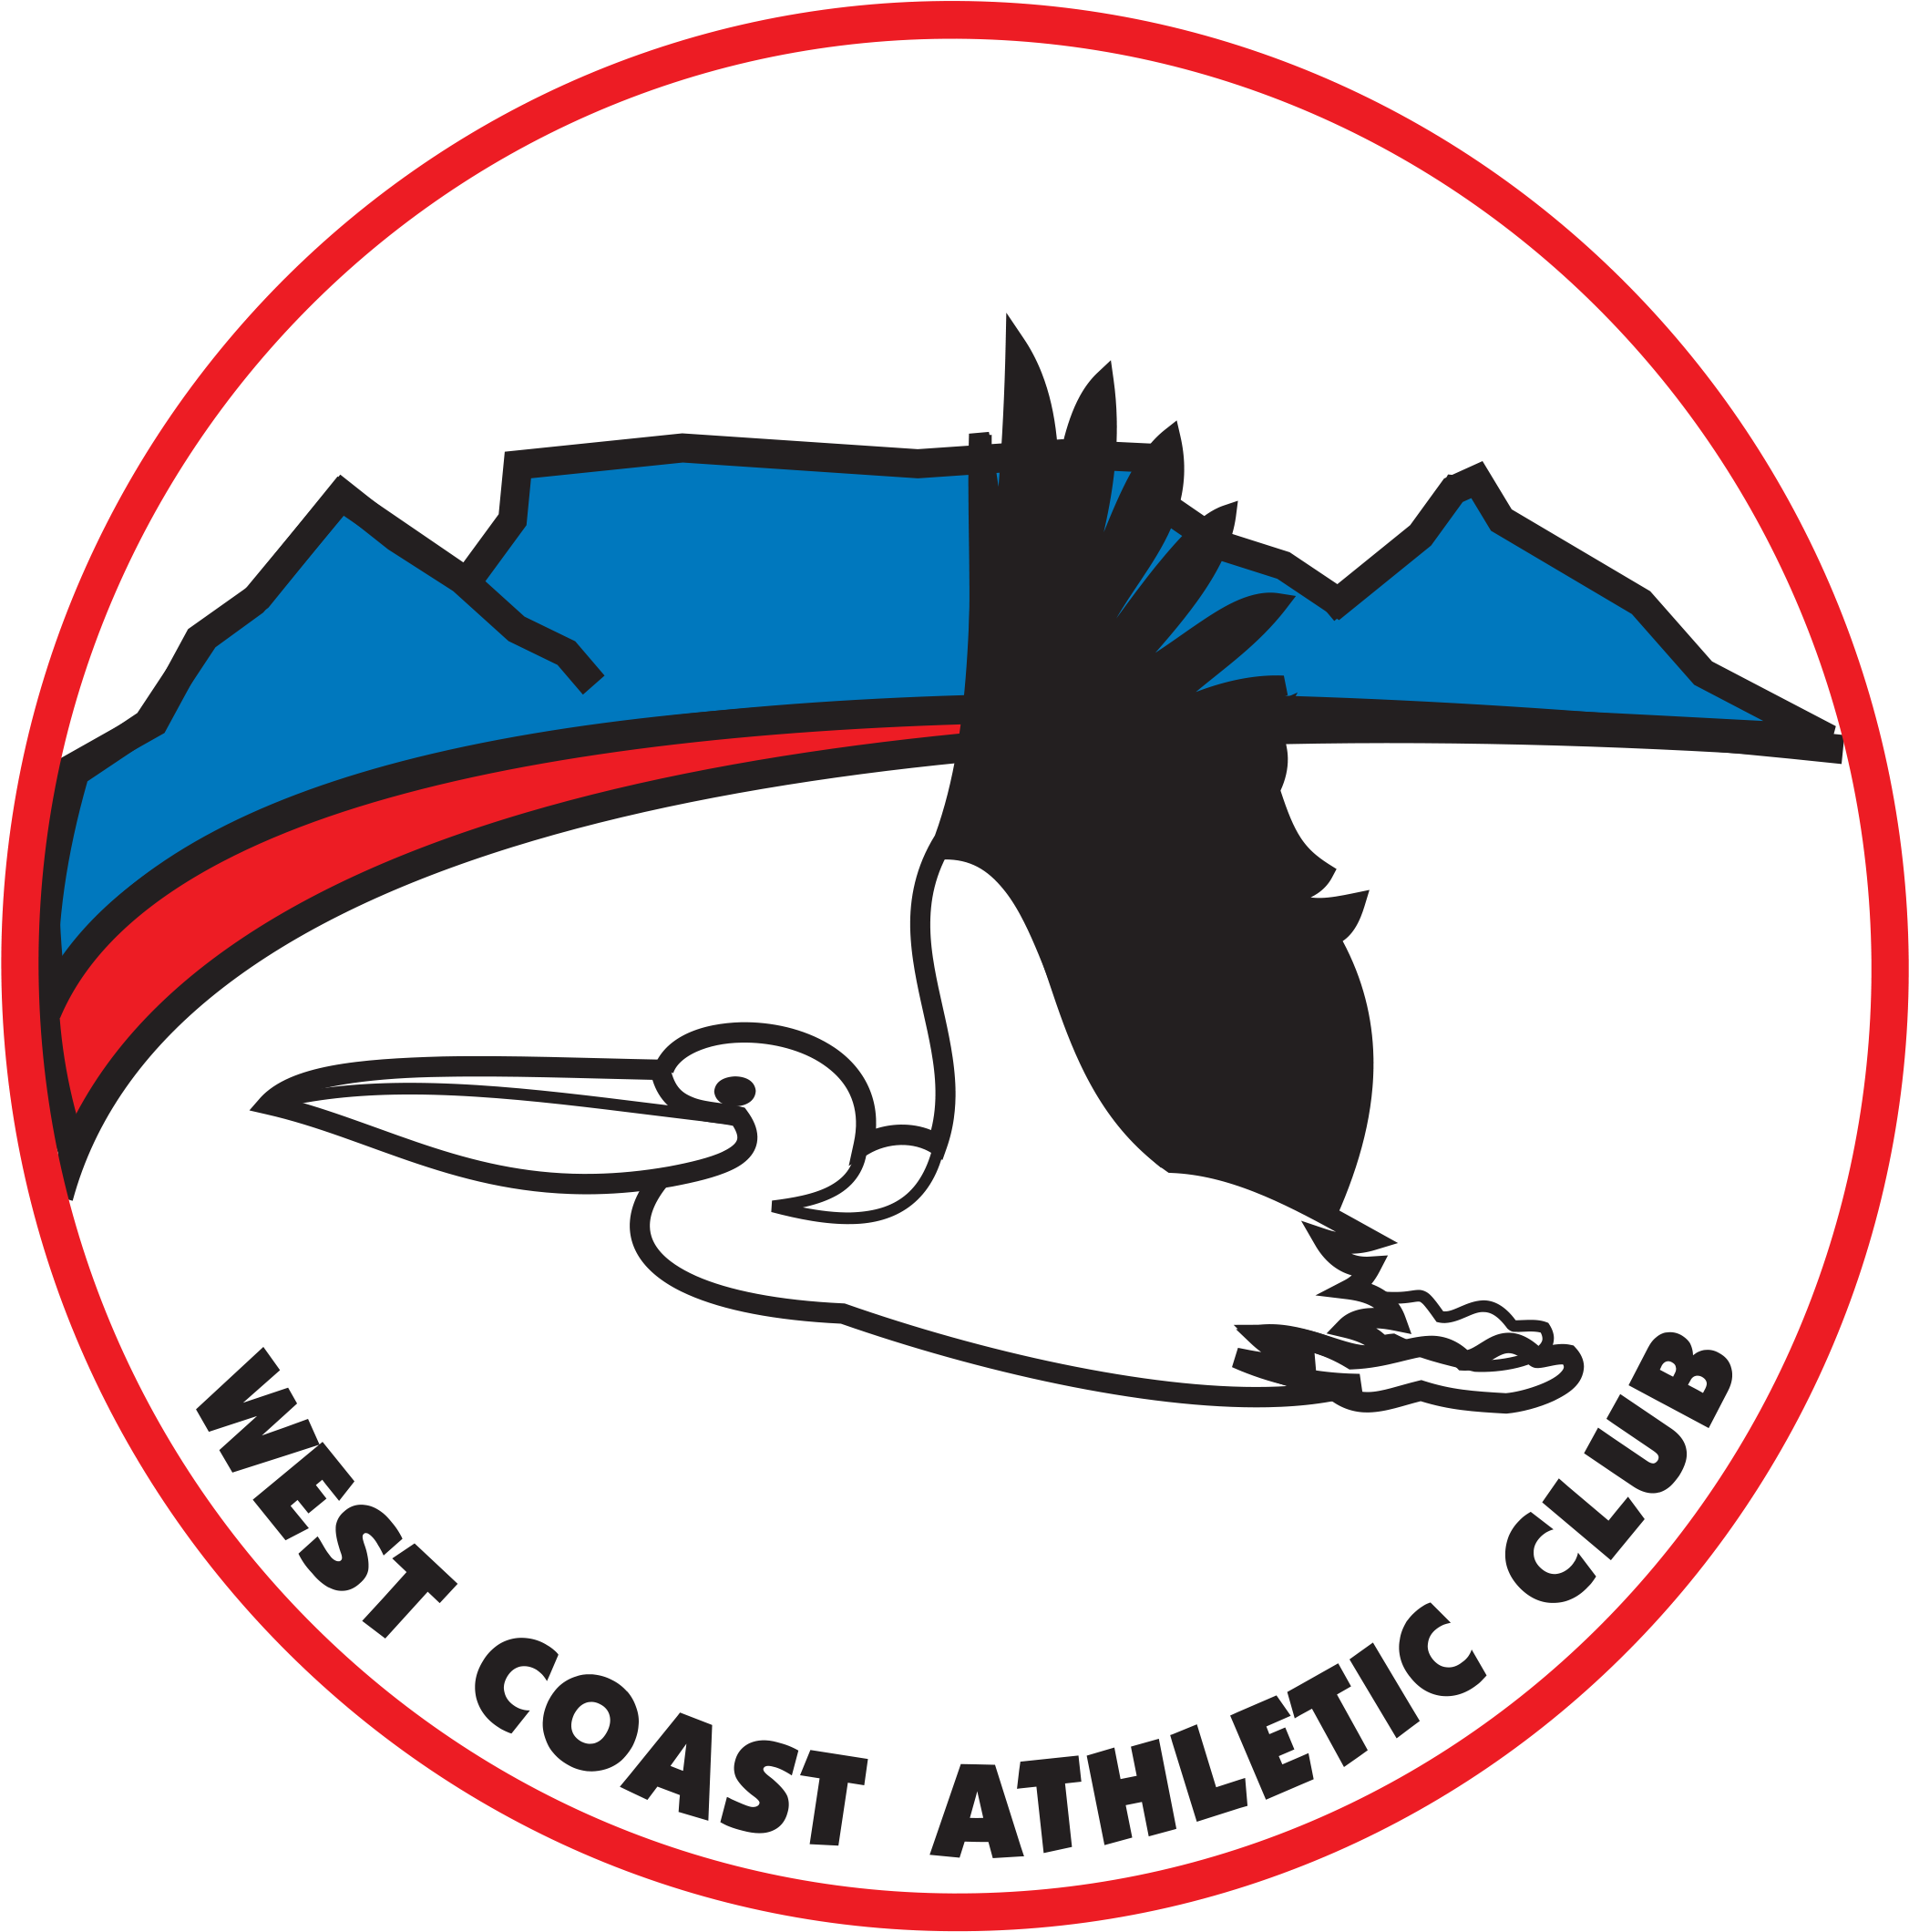 West Coast Athletics Club (2480x2551)